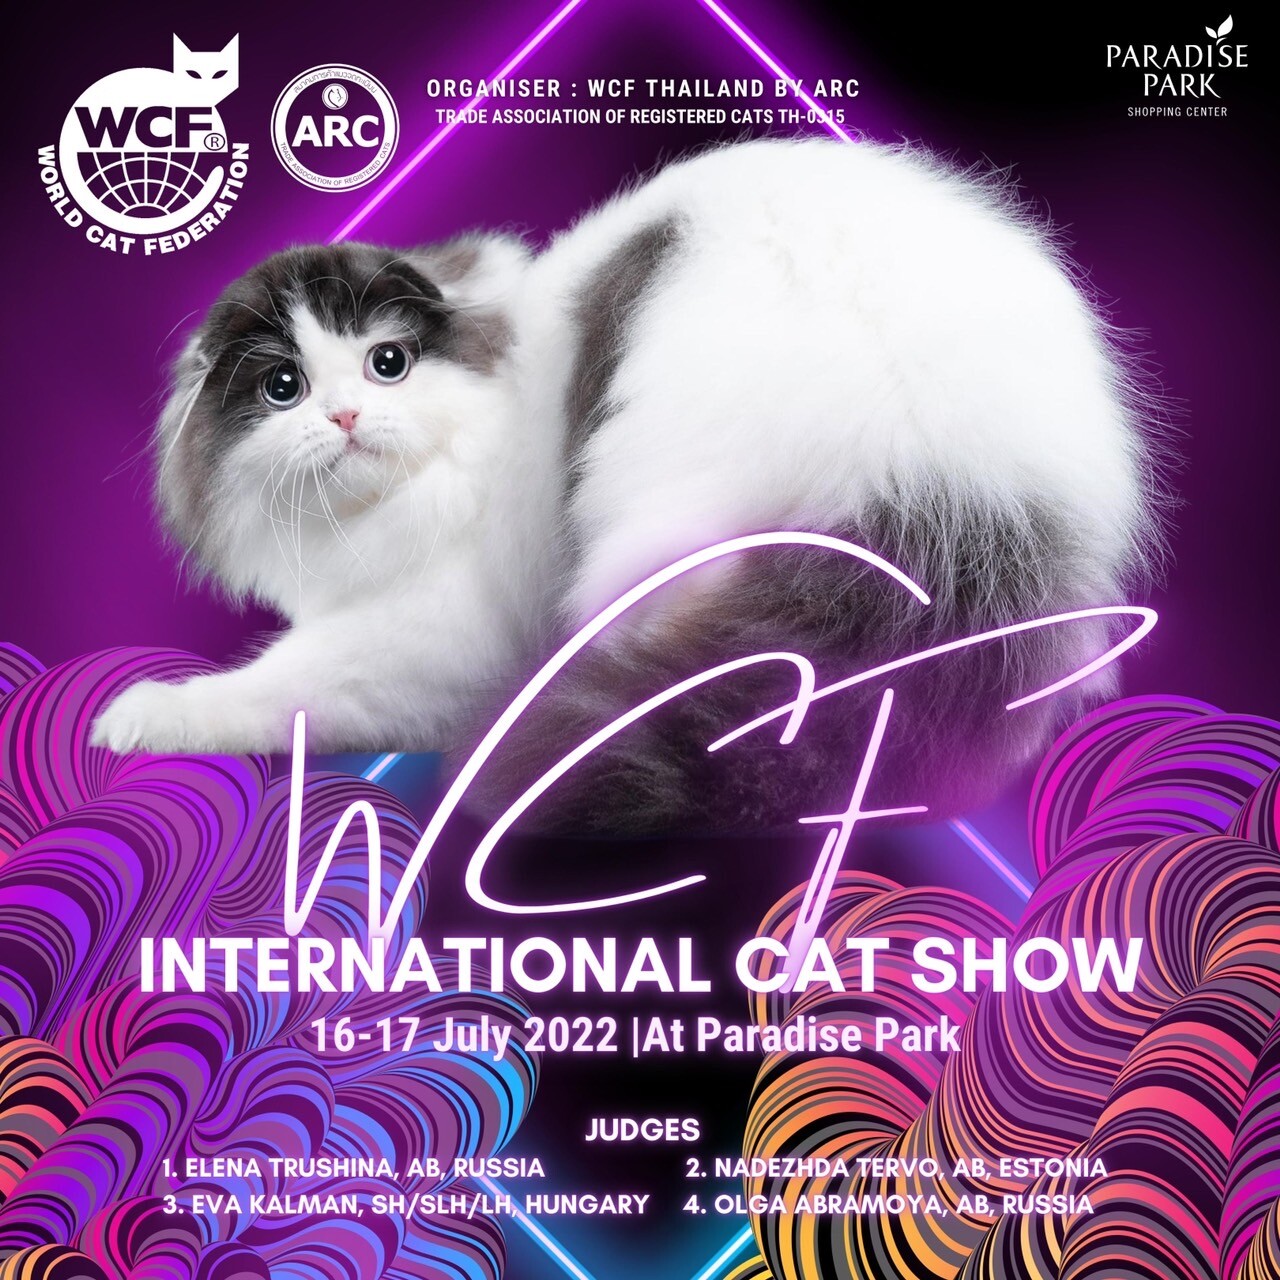 ทาสแมวต้องมา!! พาราไดซ์ พาร์ค ชวนมางานประกวดแมวสวยงาม WCF International Cat Show และกิจกรรมสารพัดของน้องแมว 16-17 ก.ค. นี้